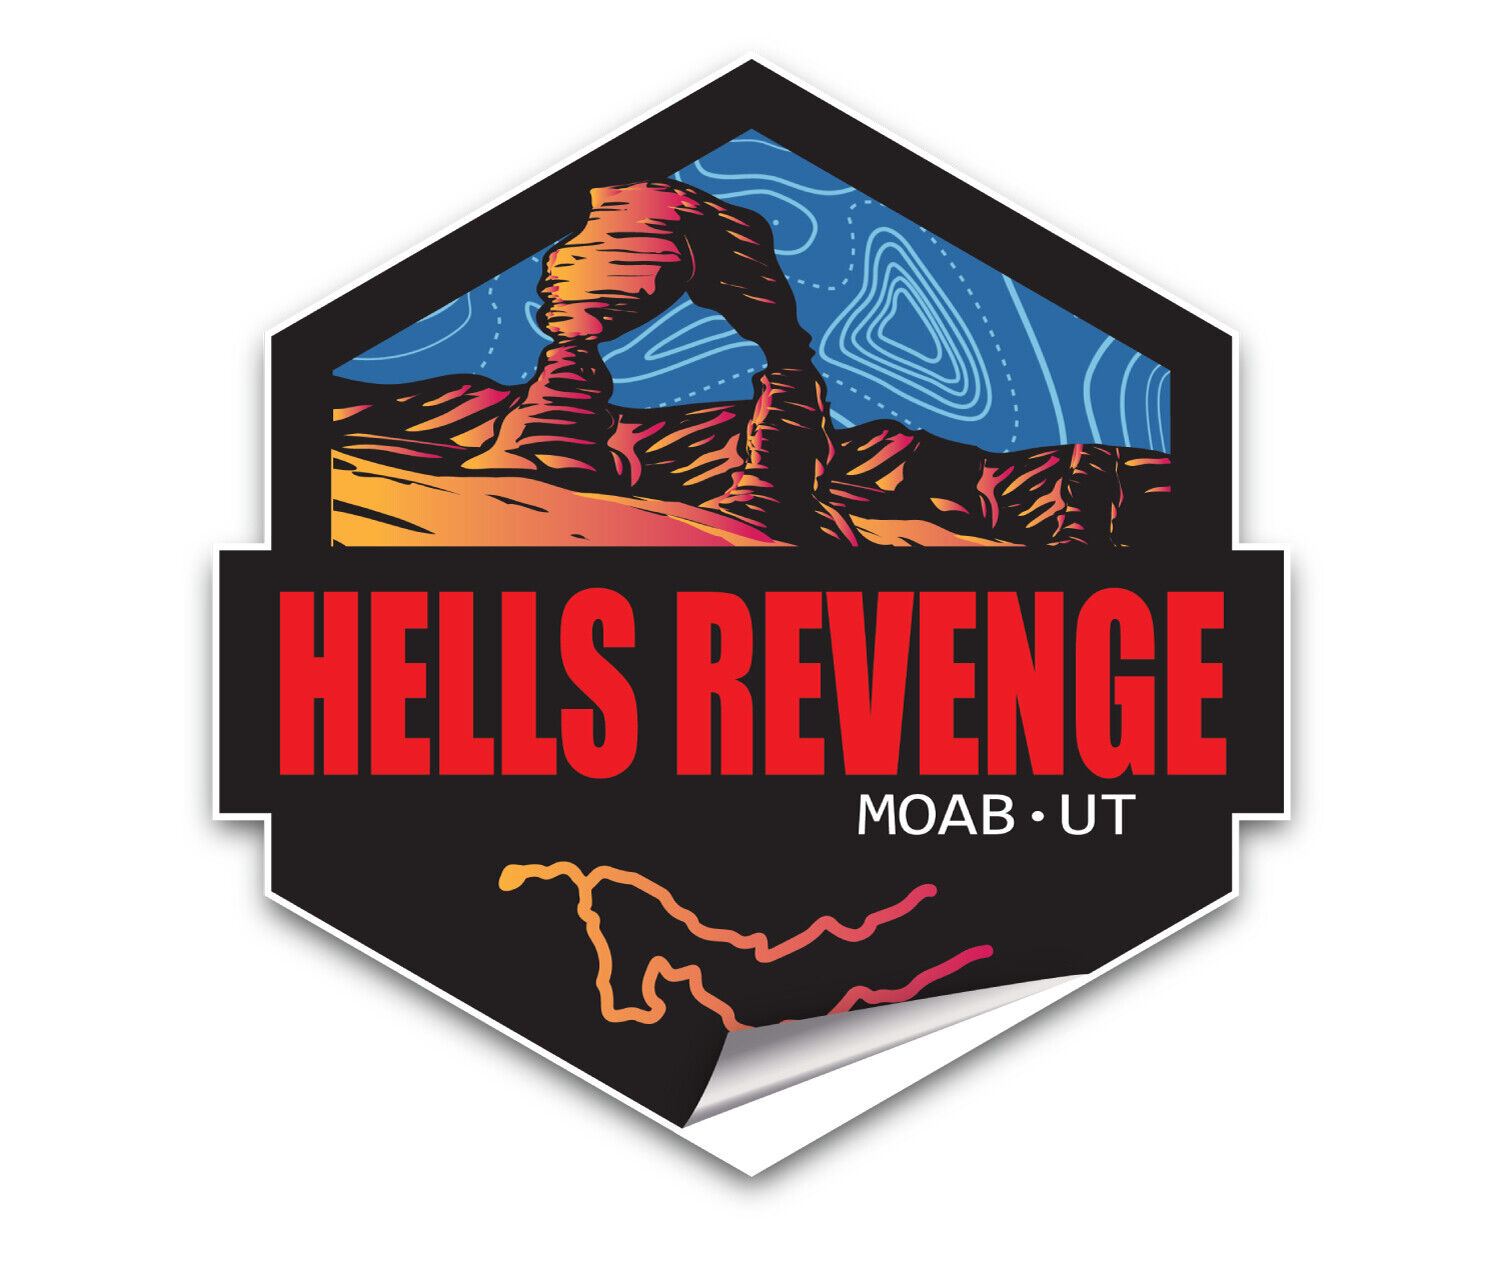 Hells Revenge Moab Utah 4x4 Trail Sticker - 3.5